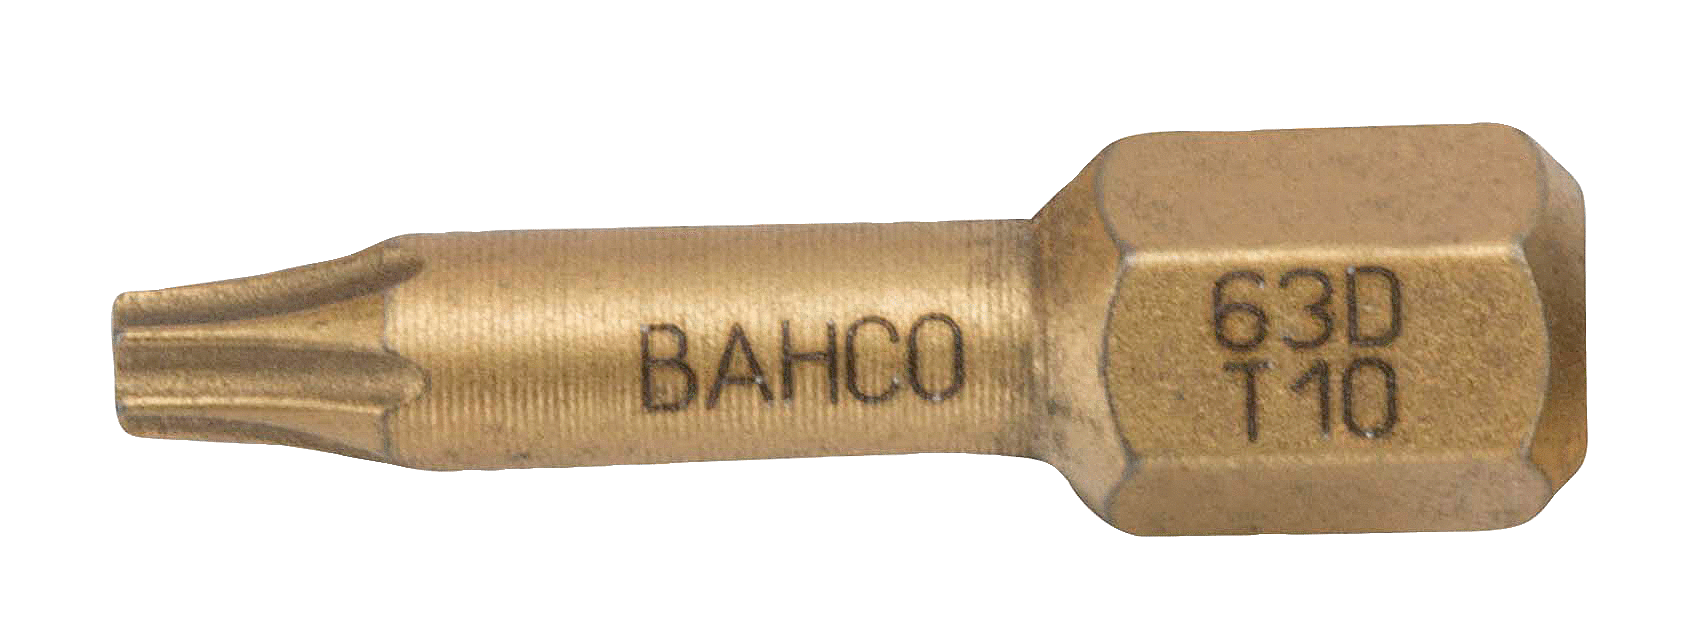 картинка Алмазные биты для отверток Torx®, 25 мм BAHCO 63D/T25 от магазина "Элит-инструмент"